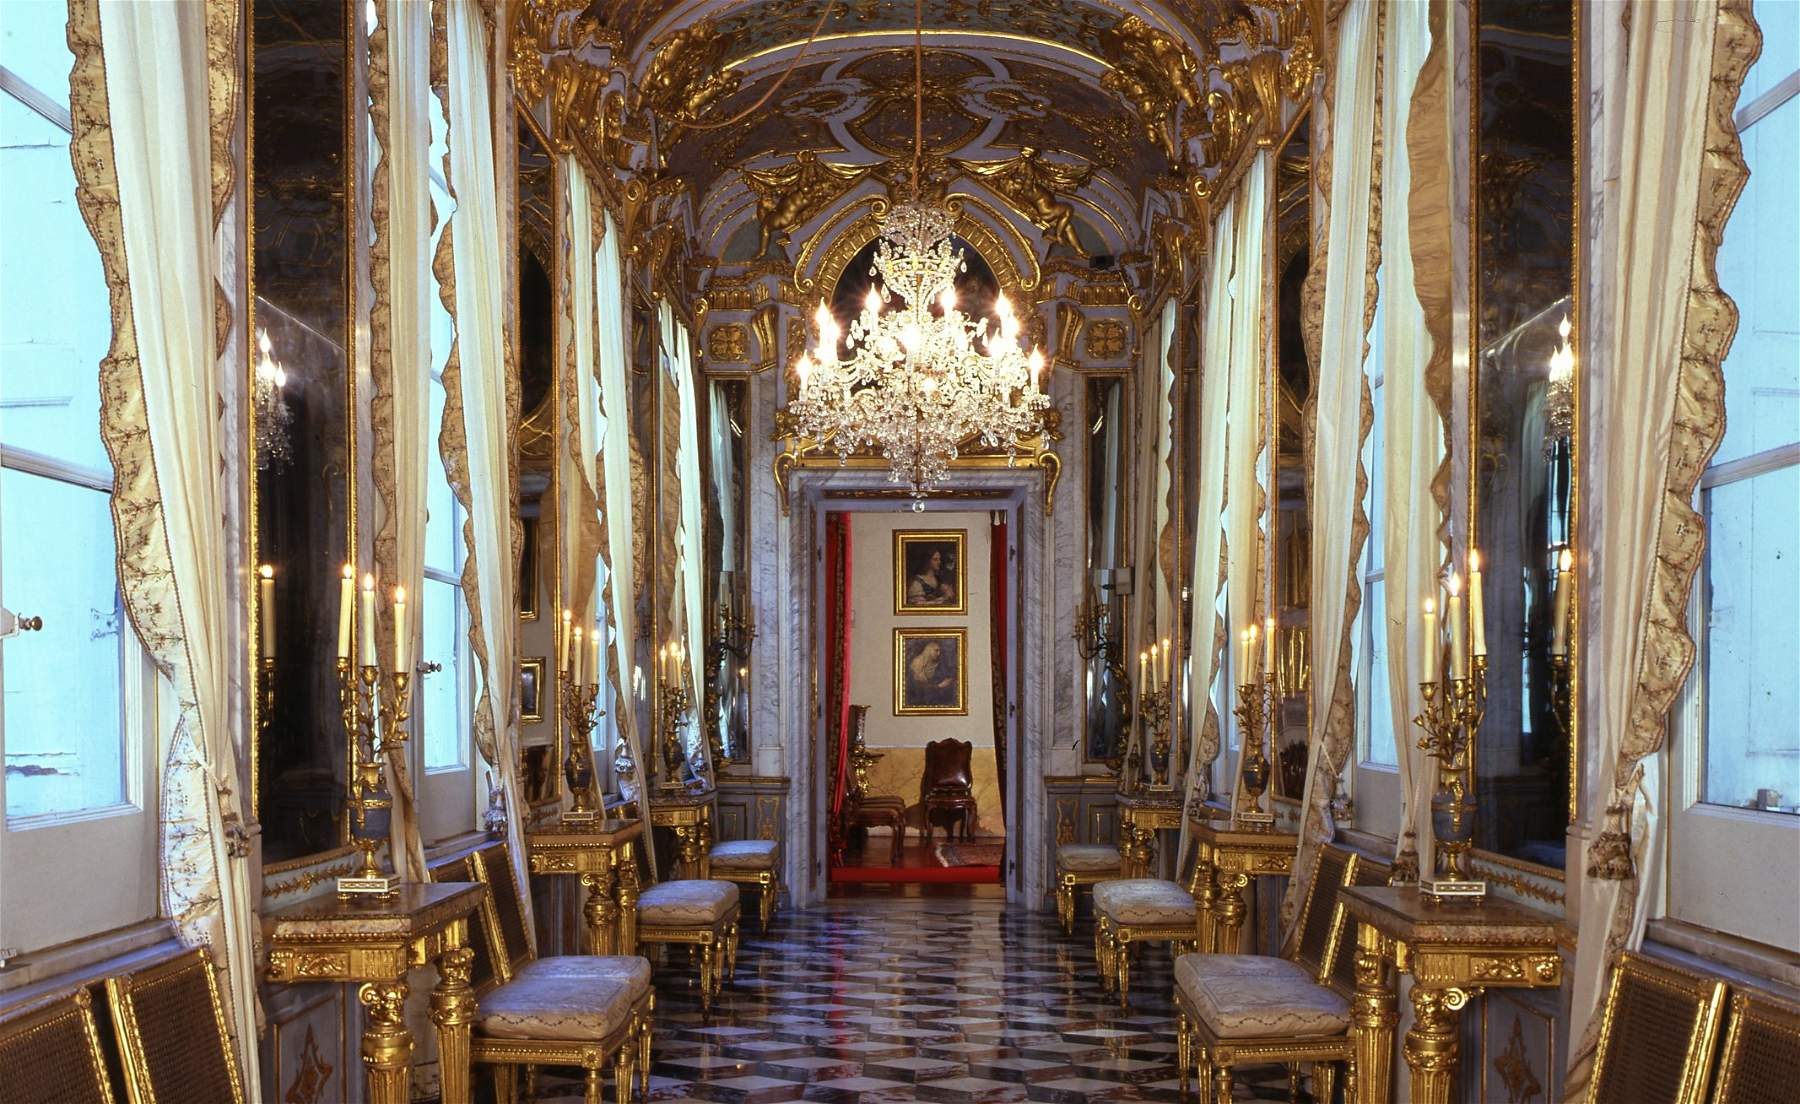 Gênes, la galerie nationale du Palazzo Spinola s'agrandit : MiBACT cherche un nouveau bâtiment